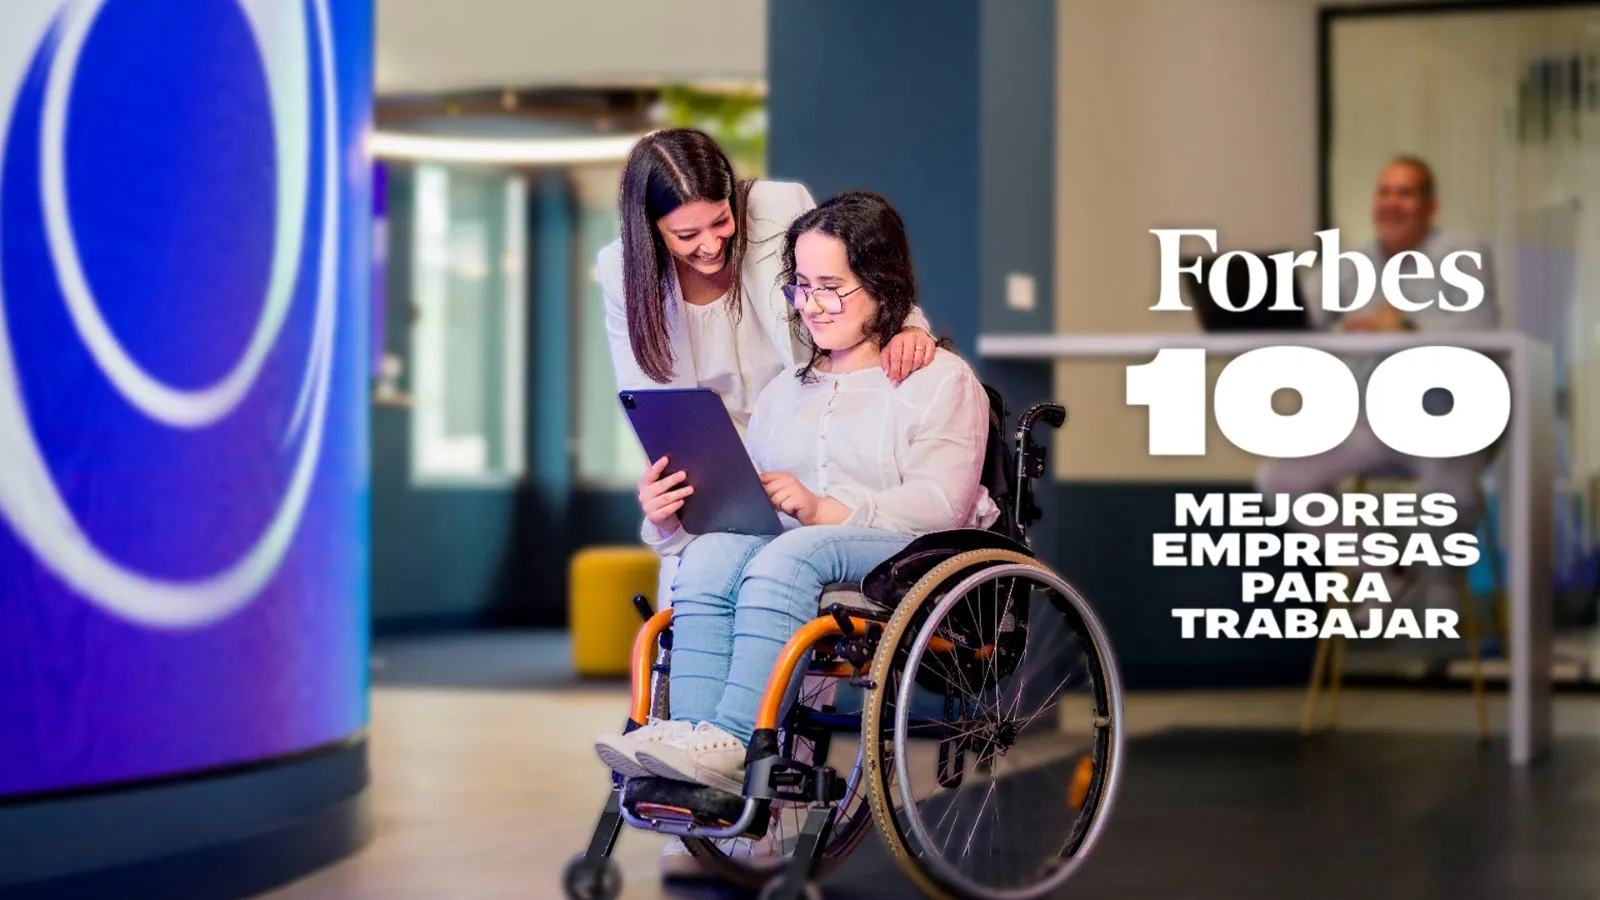 Cartela: Dos mujeres, una de ellas utiliza silla de ruedas, leen juntas un documento. Al lado, la leyenda: Forbes, 100 mejores empresas para trabajar